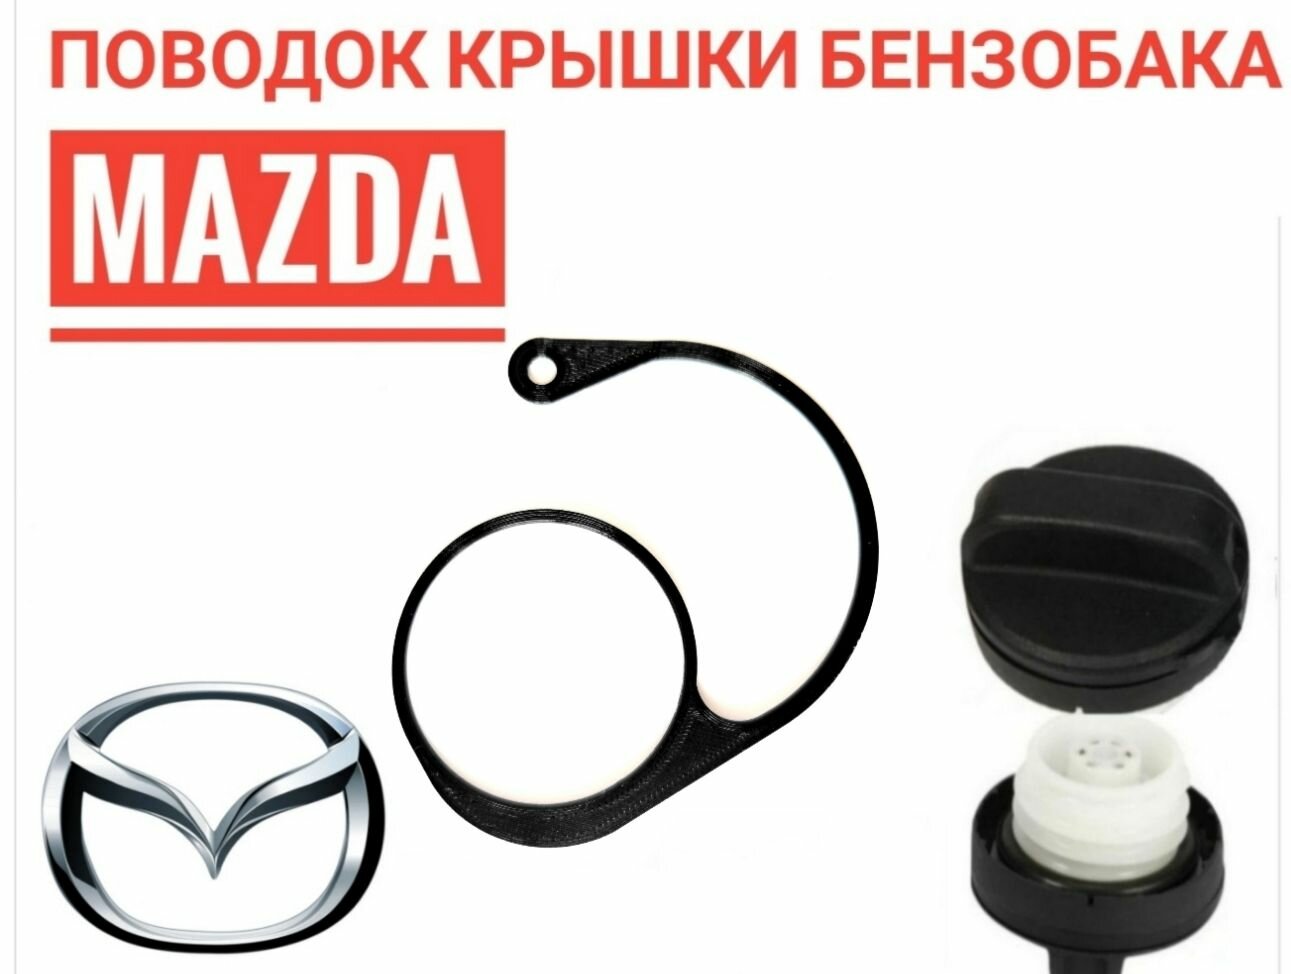 Поводок - держатель крышки бензобака Mazda